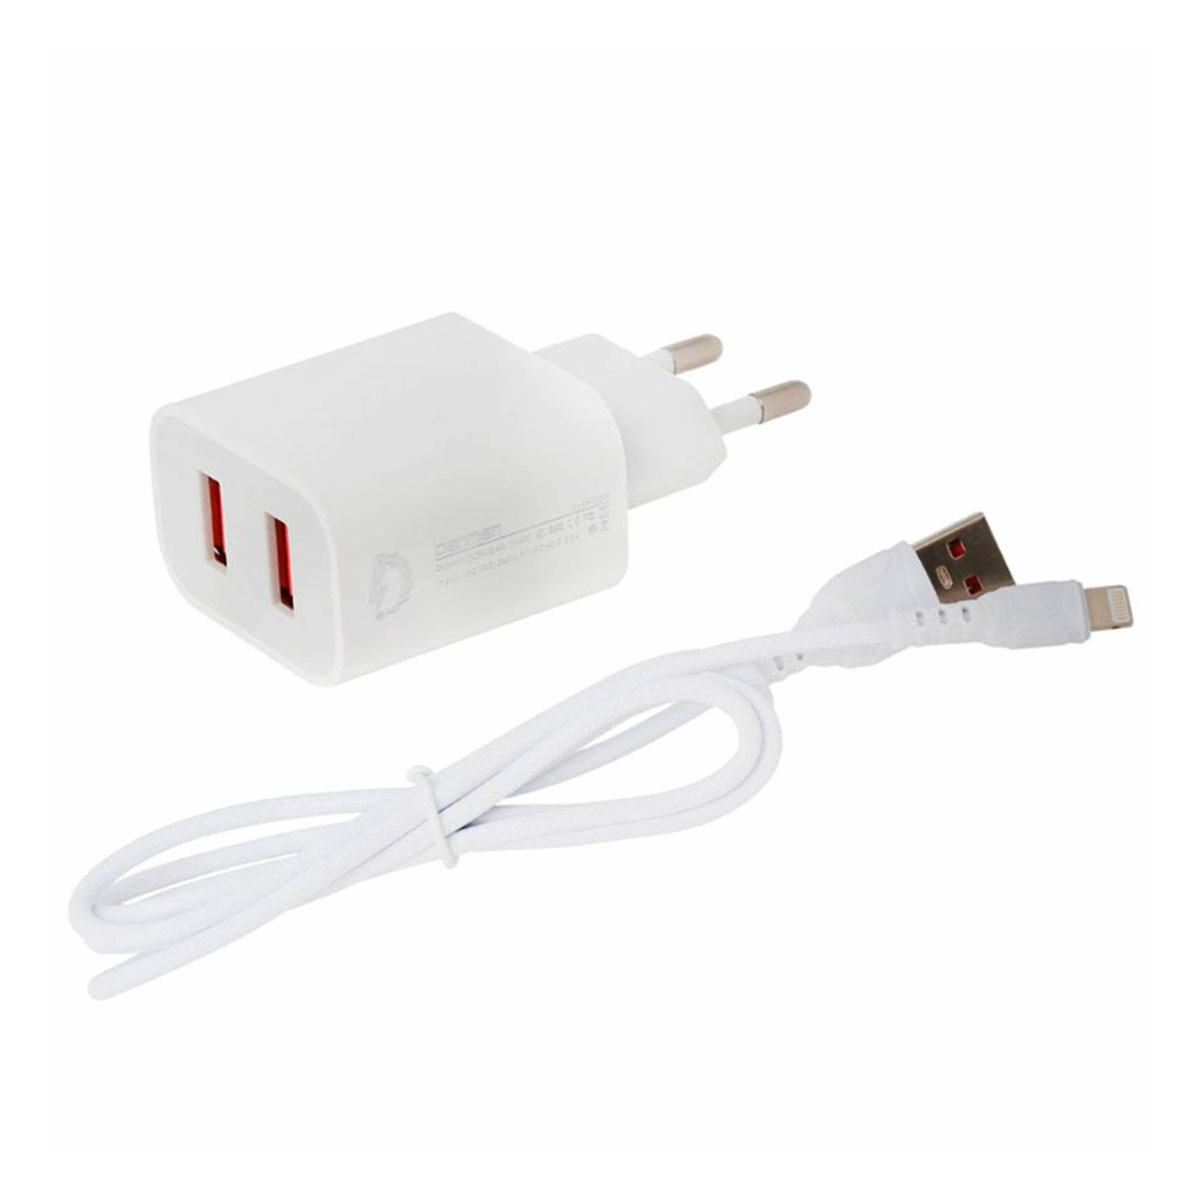 СЗУ (Сетевое зарядное устройство) DENMEN DC05L, 2.4A, 2 USB, кабель Lightning 8 pin, цвет белый